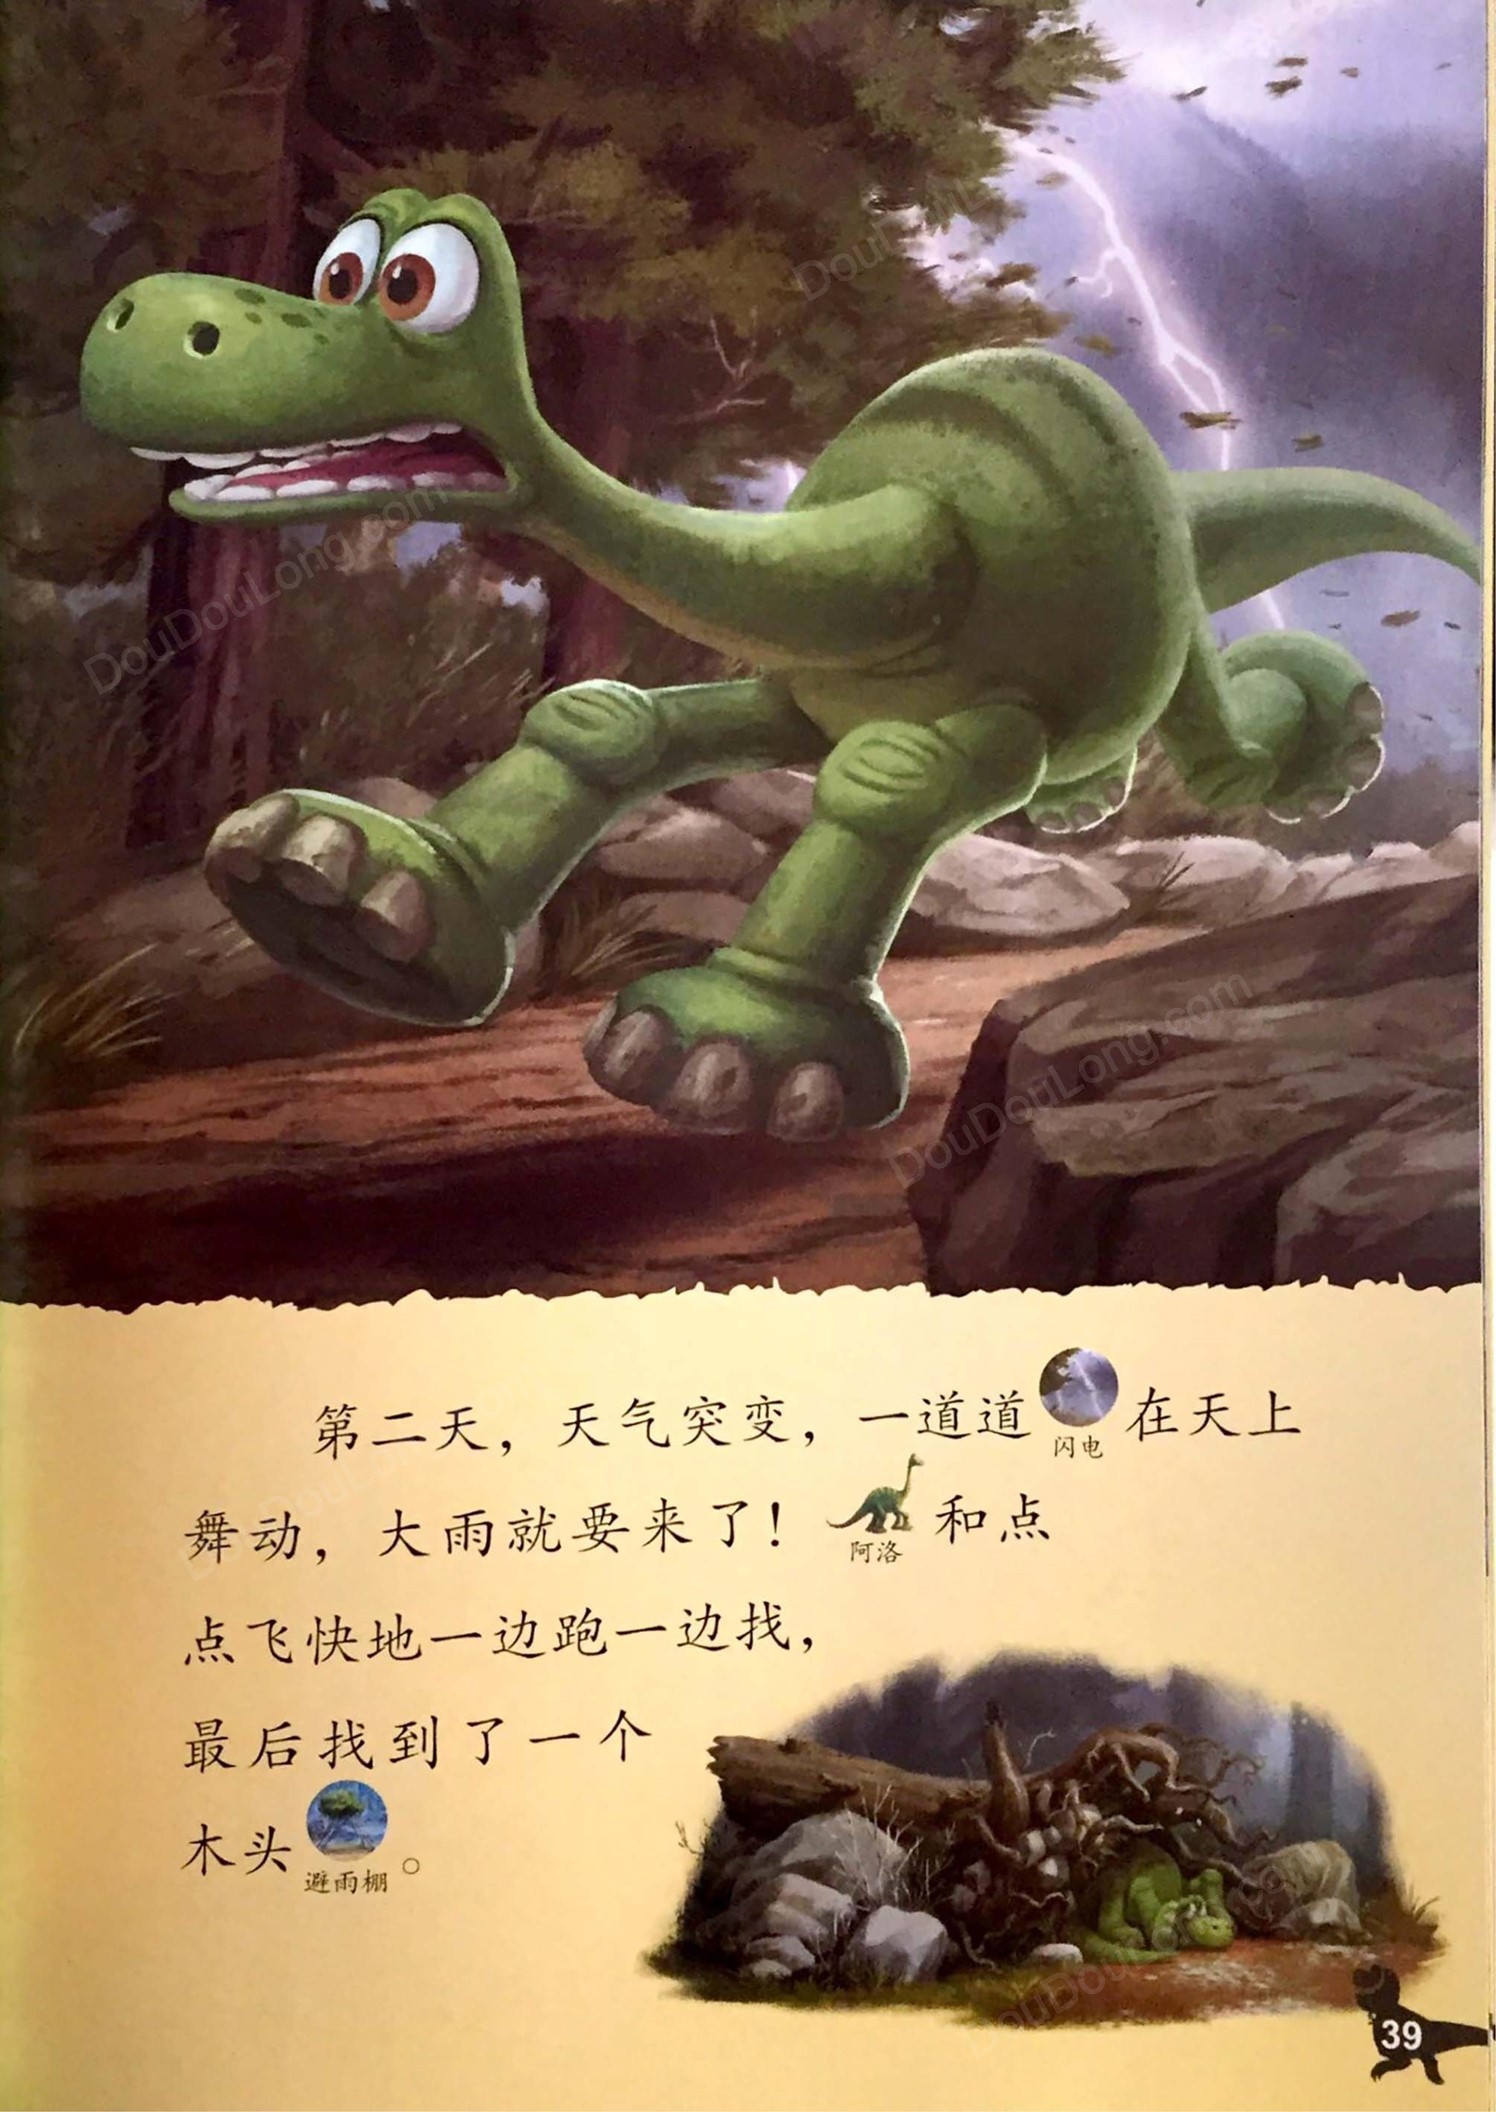 第6级 恐龙当家 - 豆豆龙中文网